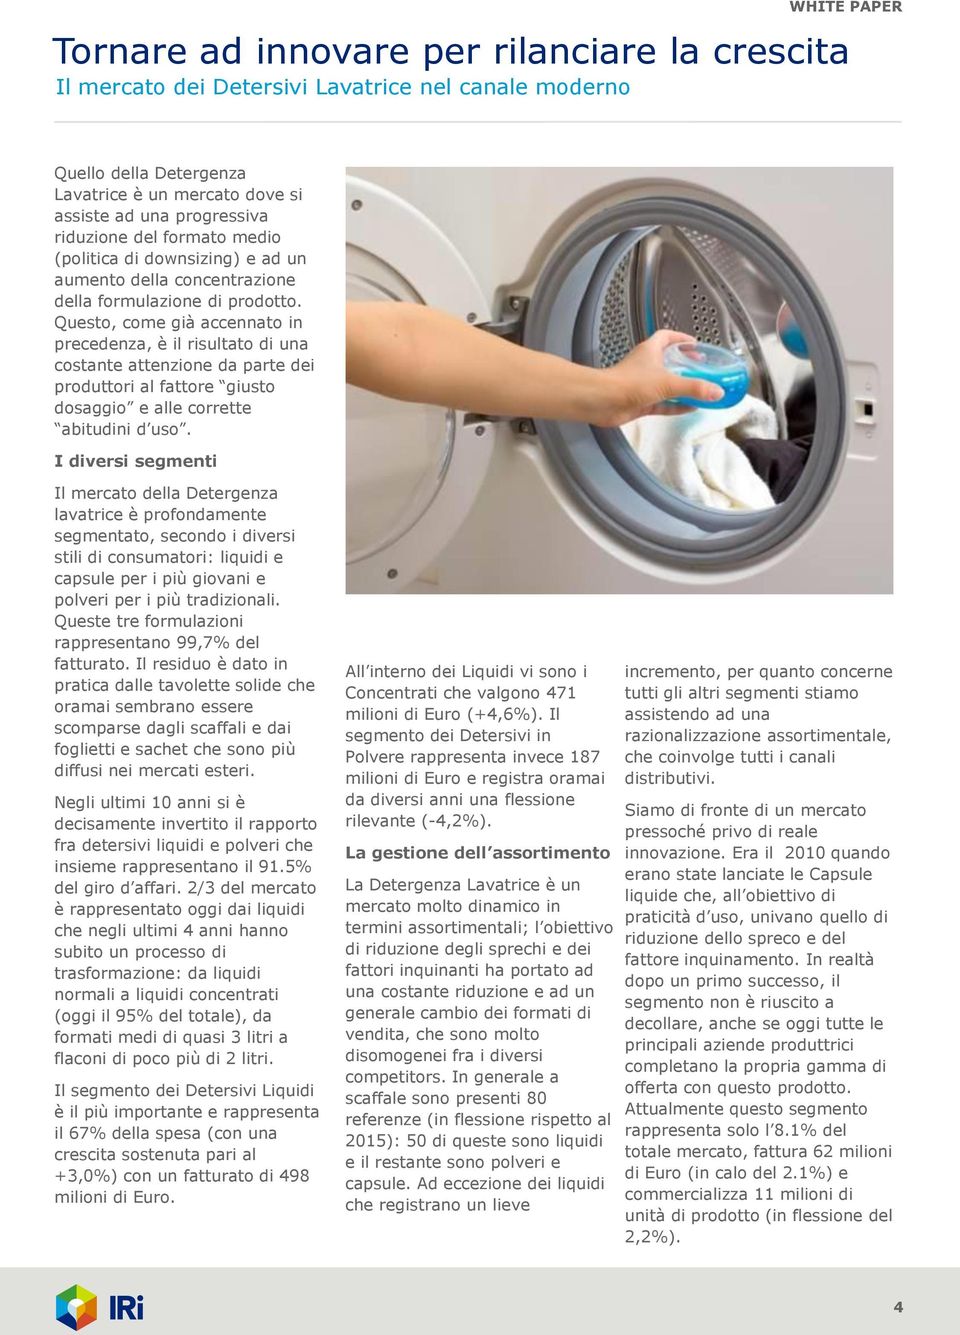 I diversi segmenti Il mercato della Detergenza lavatrice è profondamente segmentato, secondo i diversi stili di consumatori: liquidi e capsule per i più giovani e polveri per i più tradizionali.